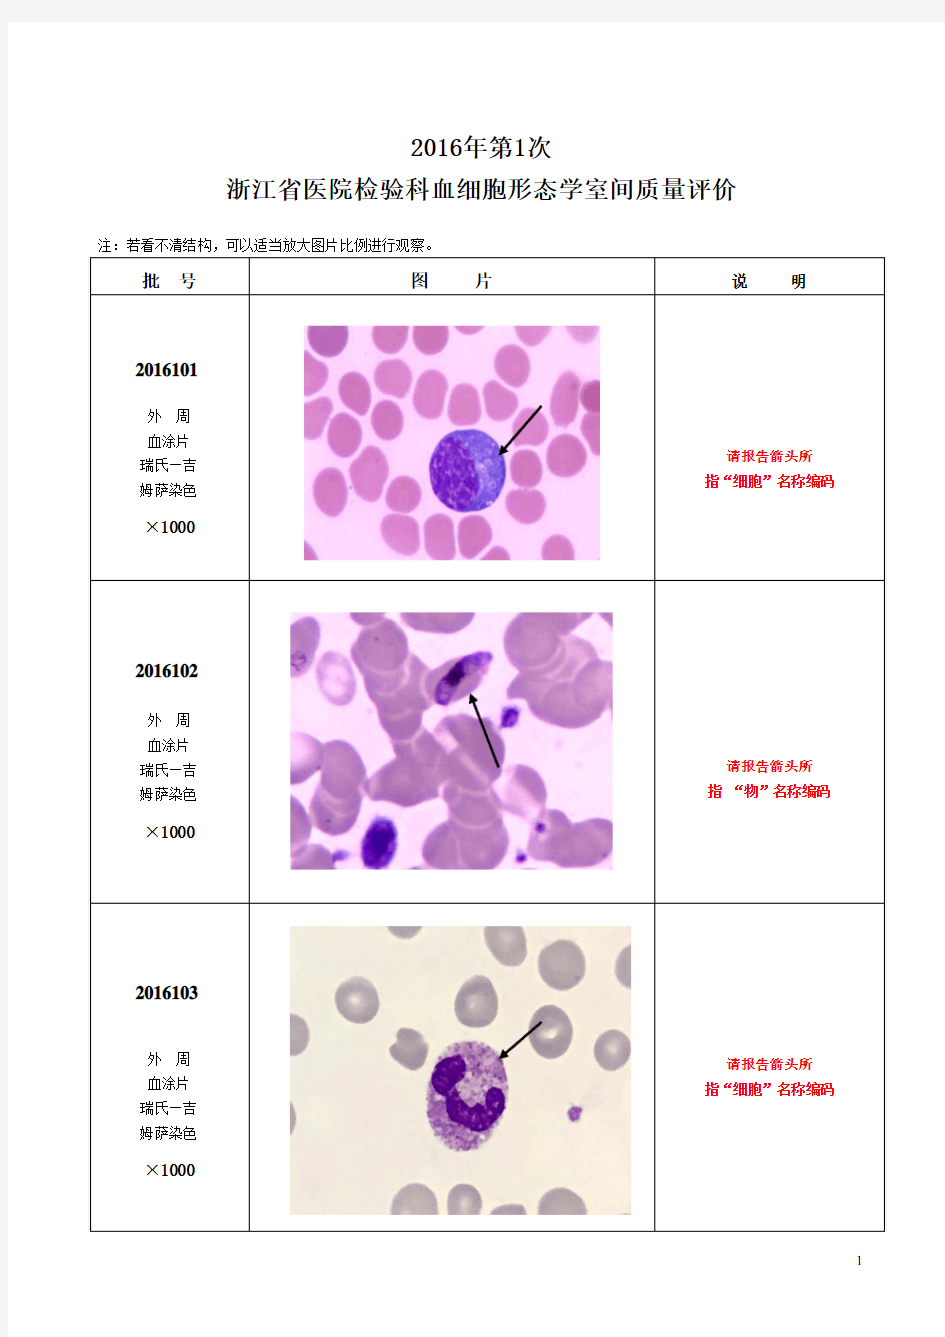 2016年第1次血细胞形态学EQA图